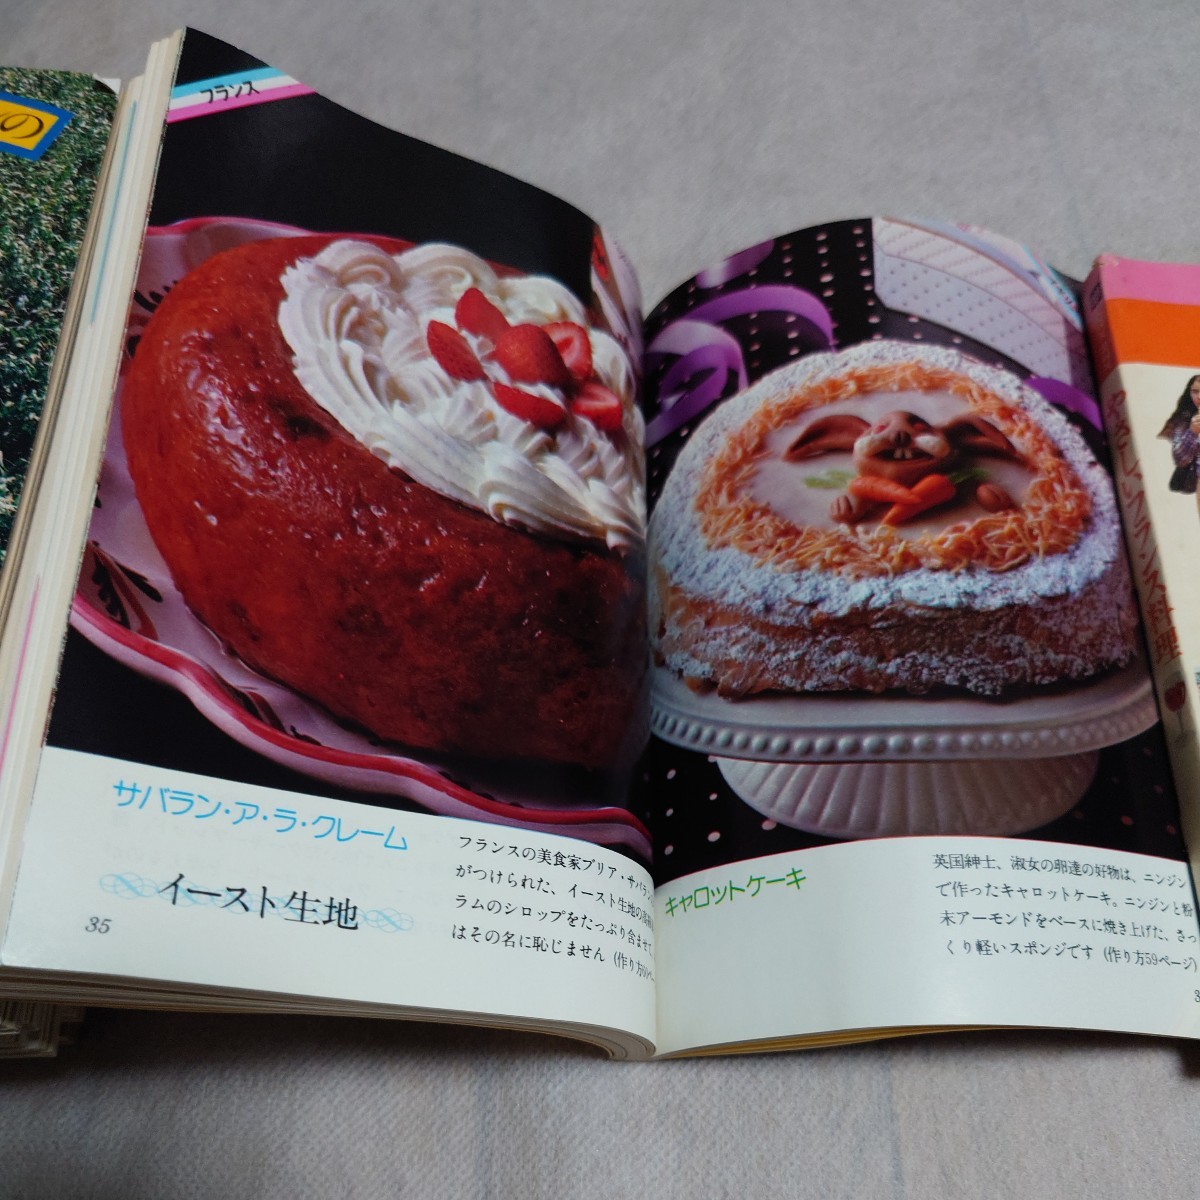 月刊COOK 1977年5月号~1978年3月号 + COOK BOOK セット 千趣会 暮らしと料理のアイデア誌 昭和/当時物 やさしいフランス料理 世界のお菓子_画像8